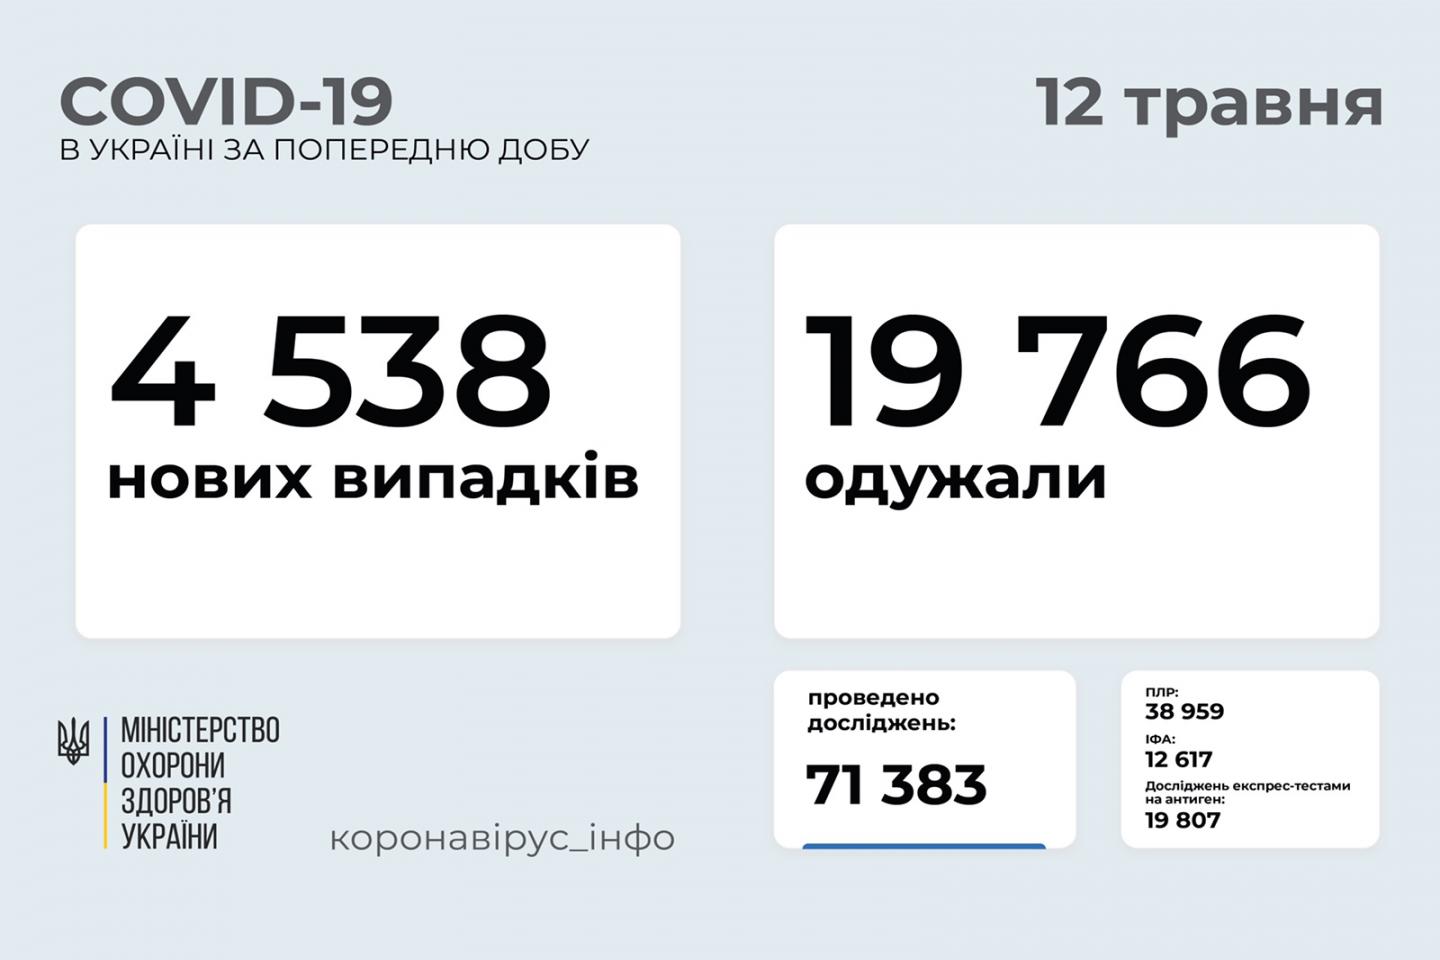 http://dunrada.gov.ua/uploadfile/archive_news/2021/05/12/2021-05-12_9476/images/images-97926.jpg